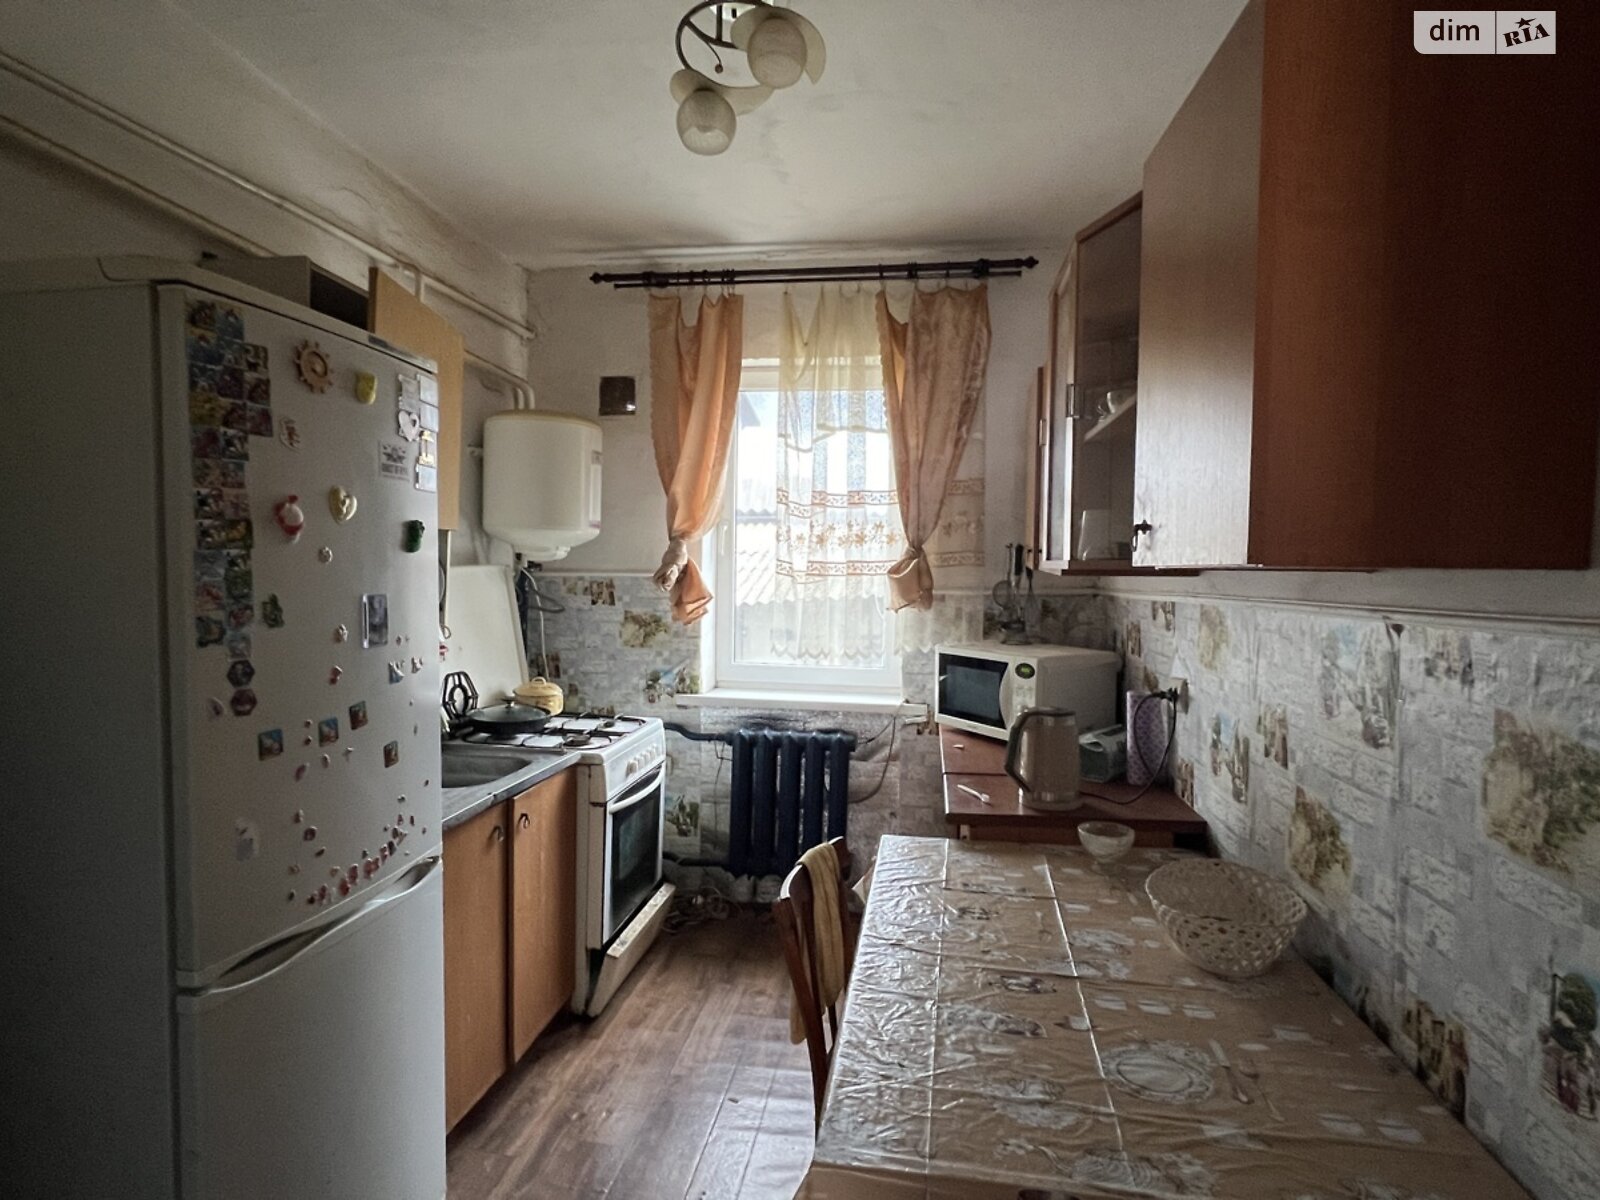 Продажа части дома в Красиловке, улица Новосадовая, 2 комнаты фото 1